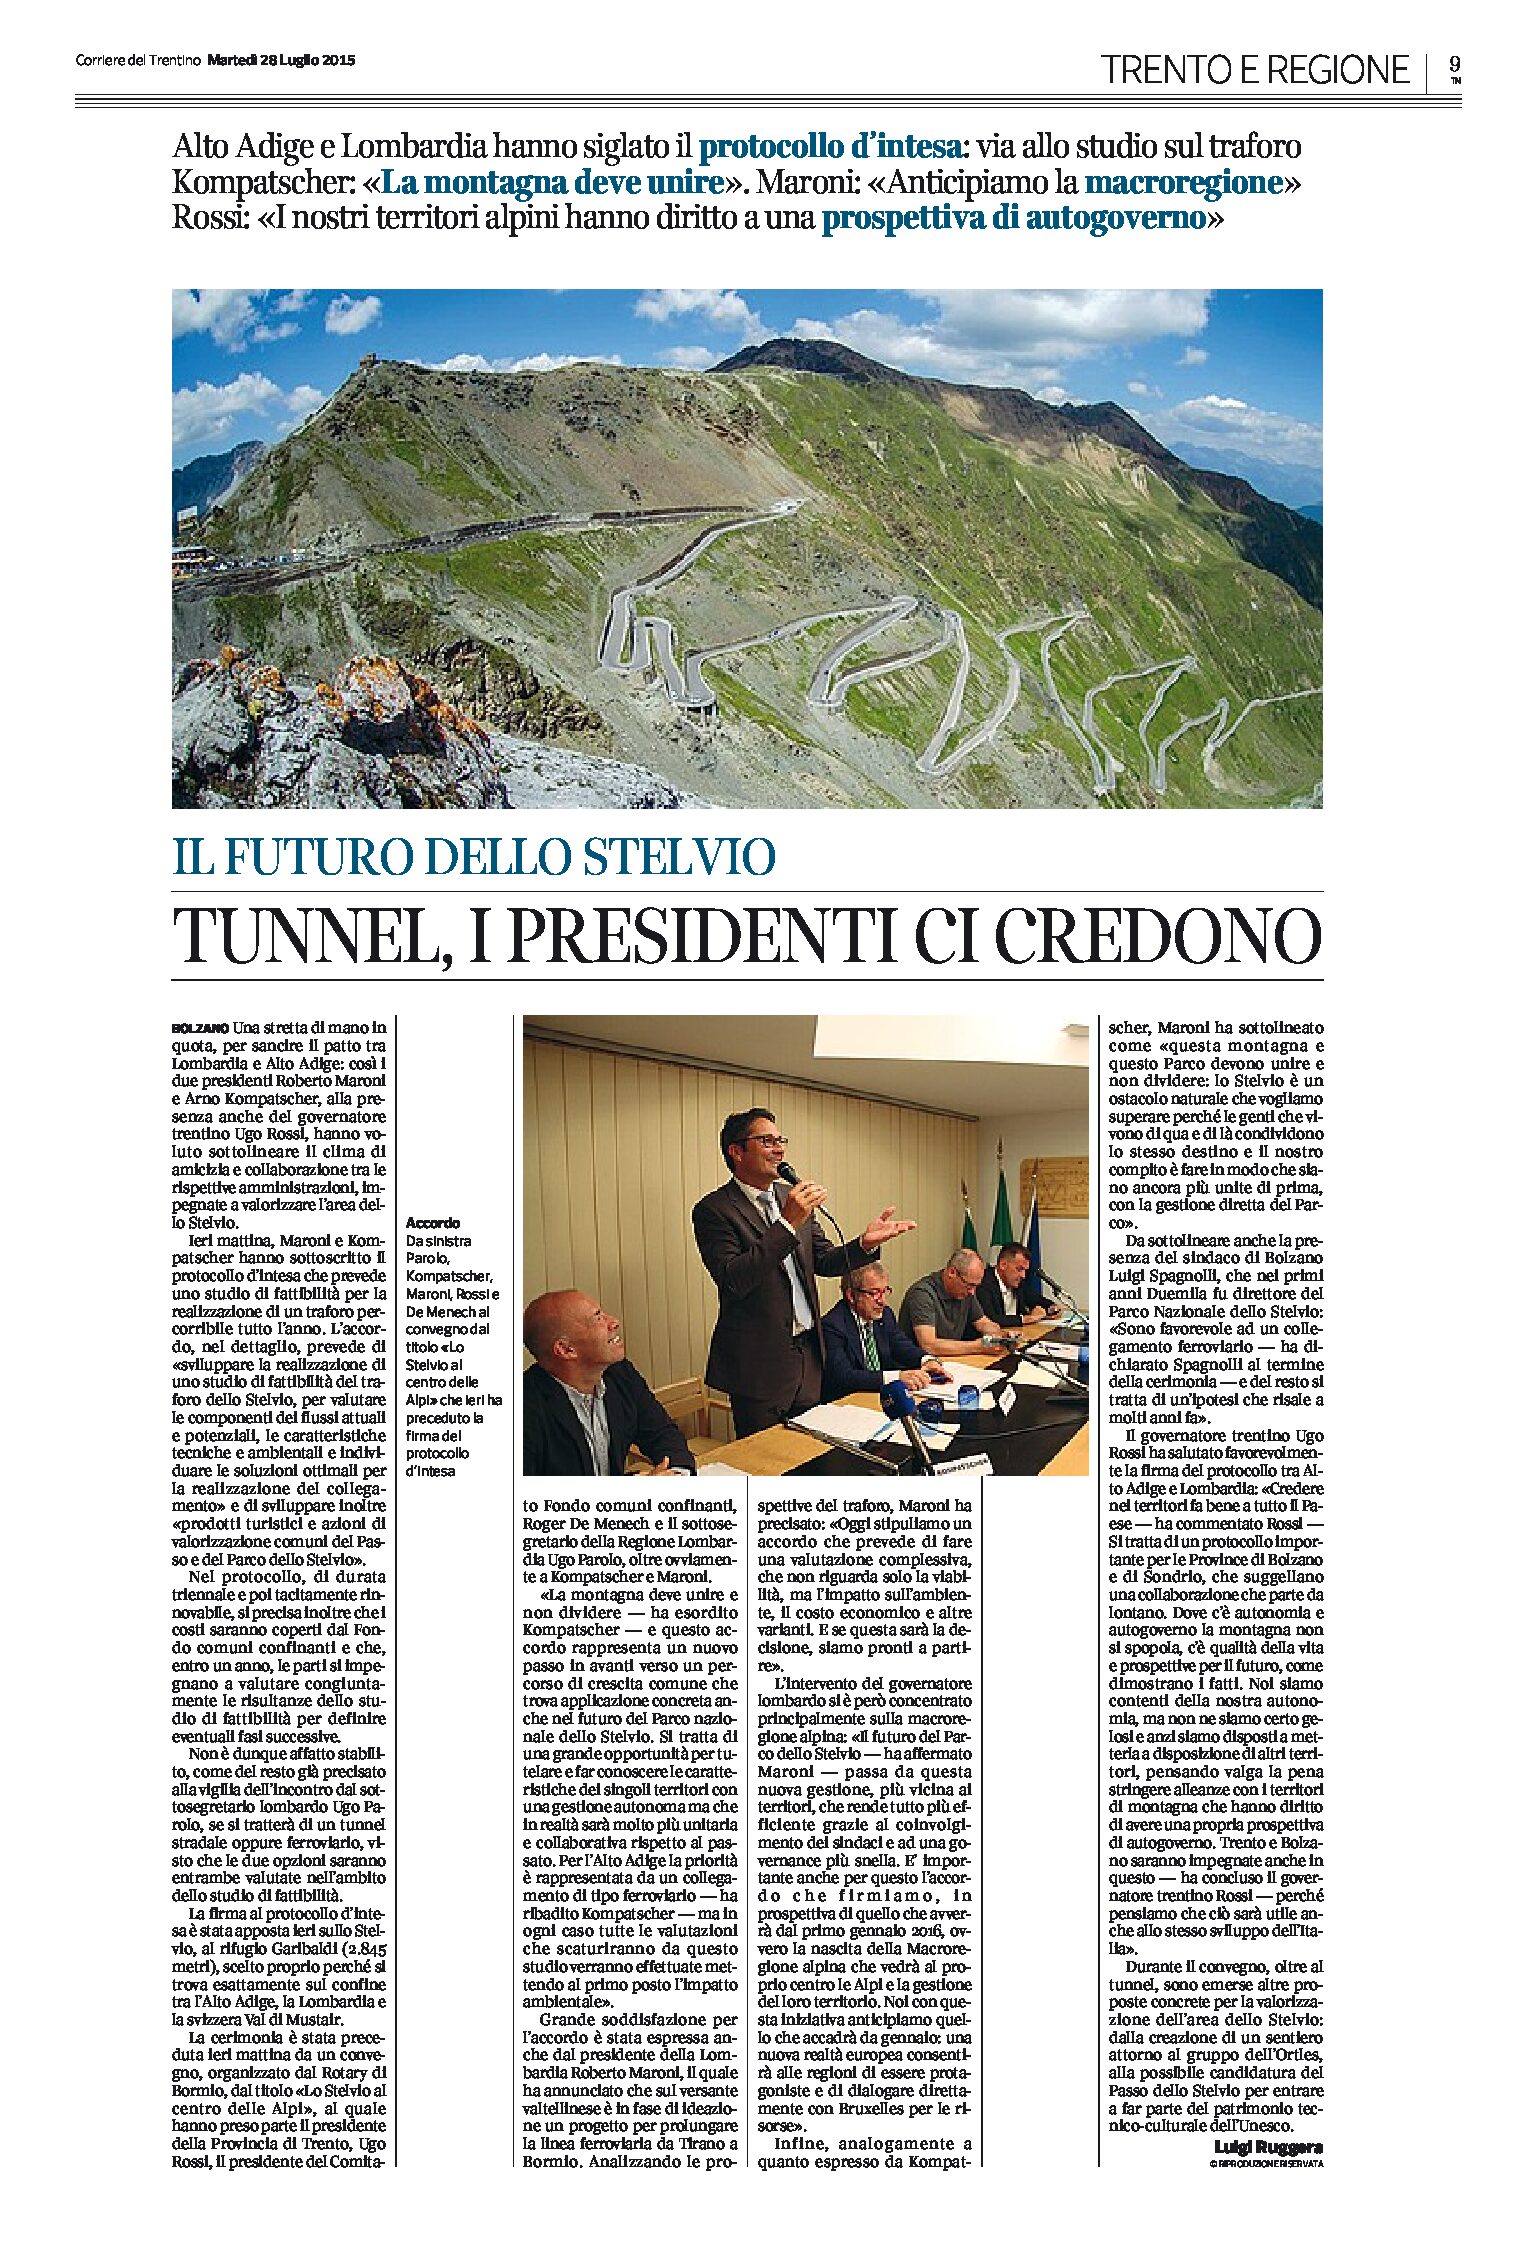 Tunnel dello Stelvio: i Presidenti ci credono